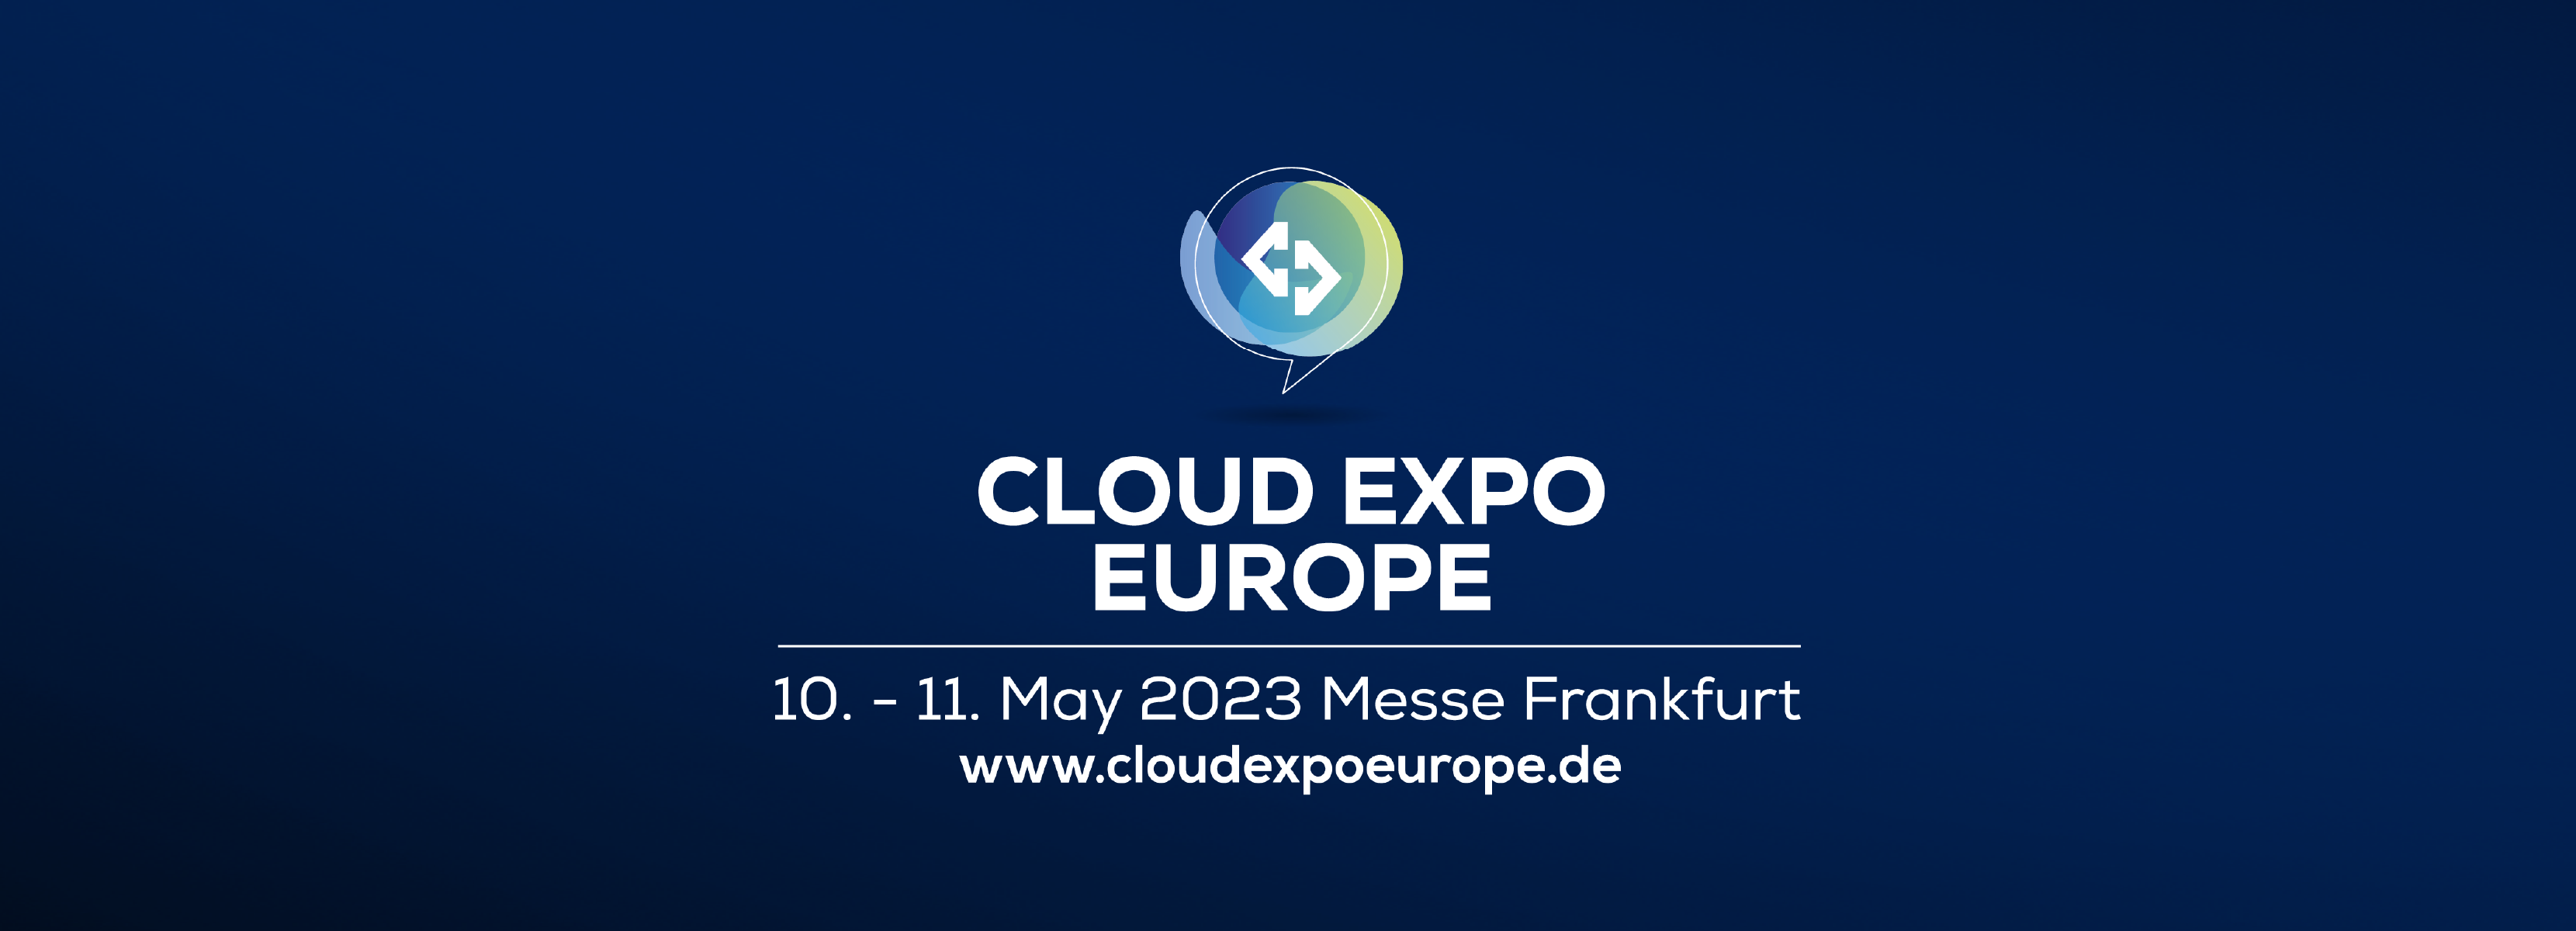 Cloud Expo Europe 2023: sicherer Datentausch, umweltfreundliche IT und mehr – eine kurze Zusammenfassung